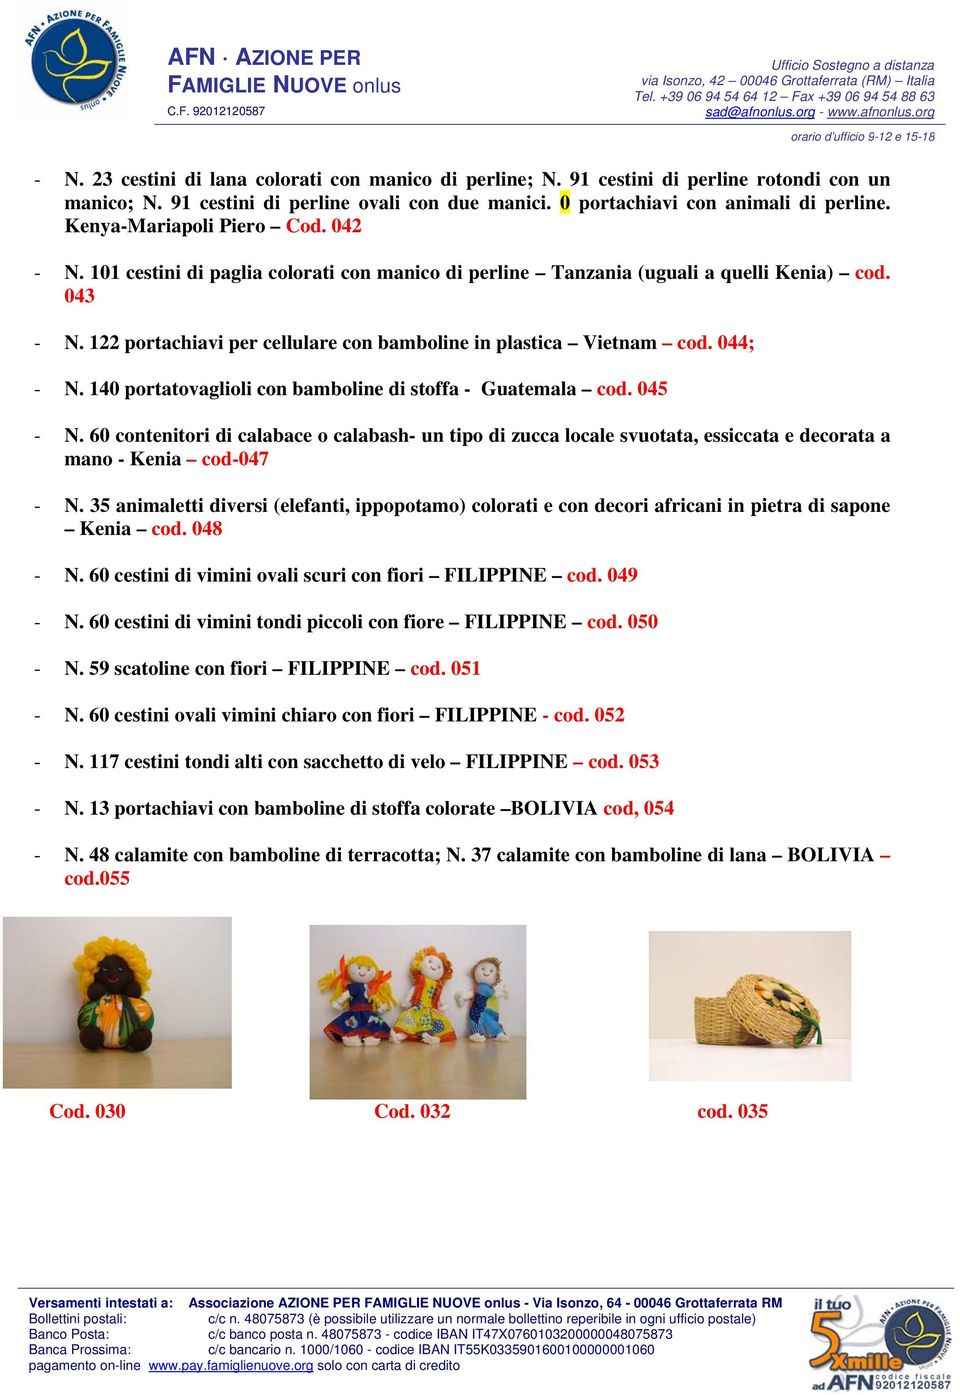 122 portachiavi per cellulare con bamboline in plastica Vietnam cod. 044; - N. 140 portatovaglioli con bamboline di stoffa - Guatemala cod. 045 - N.